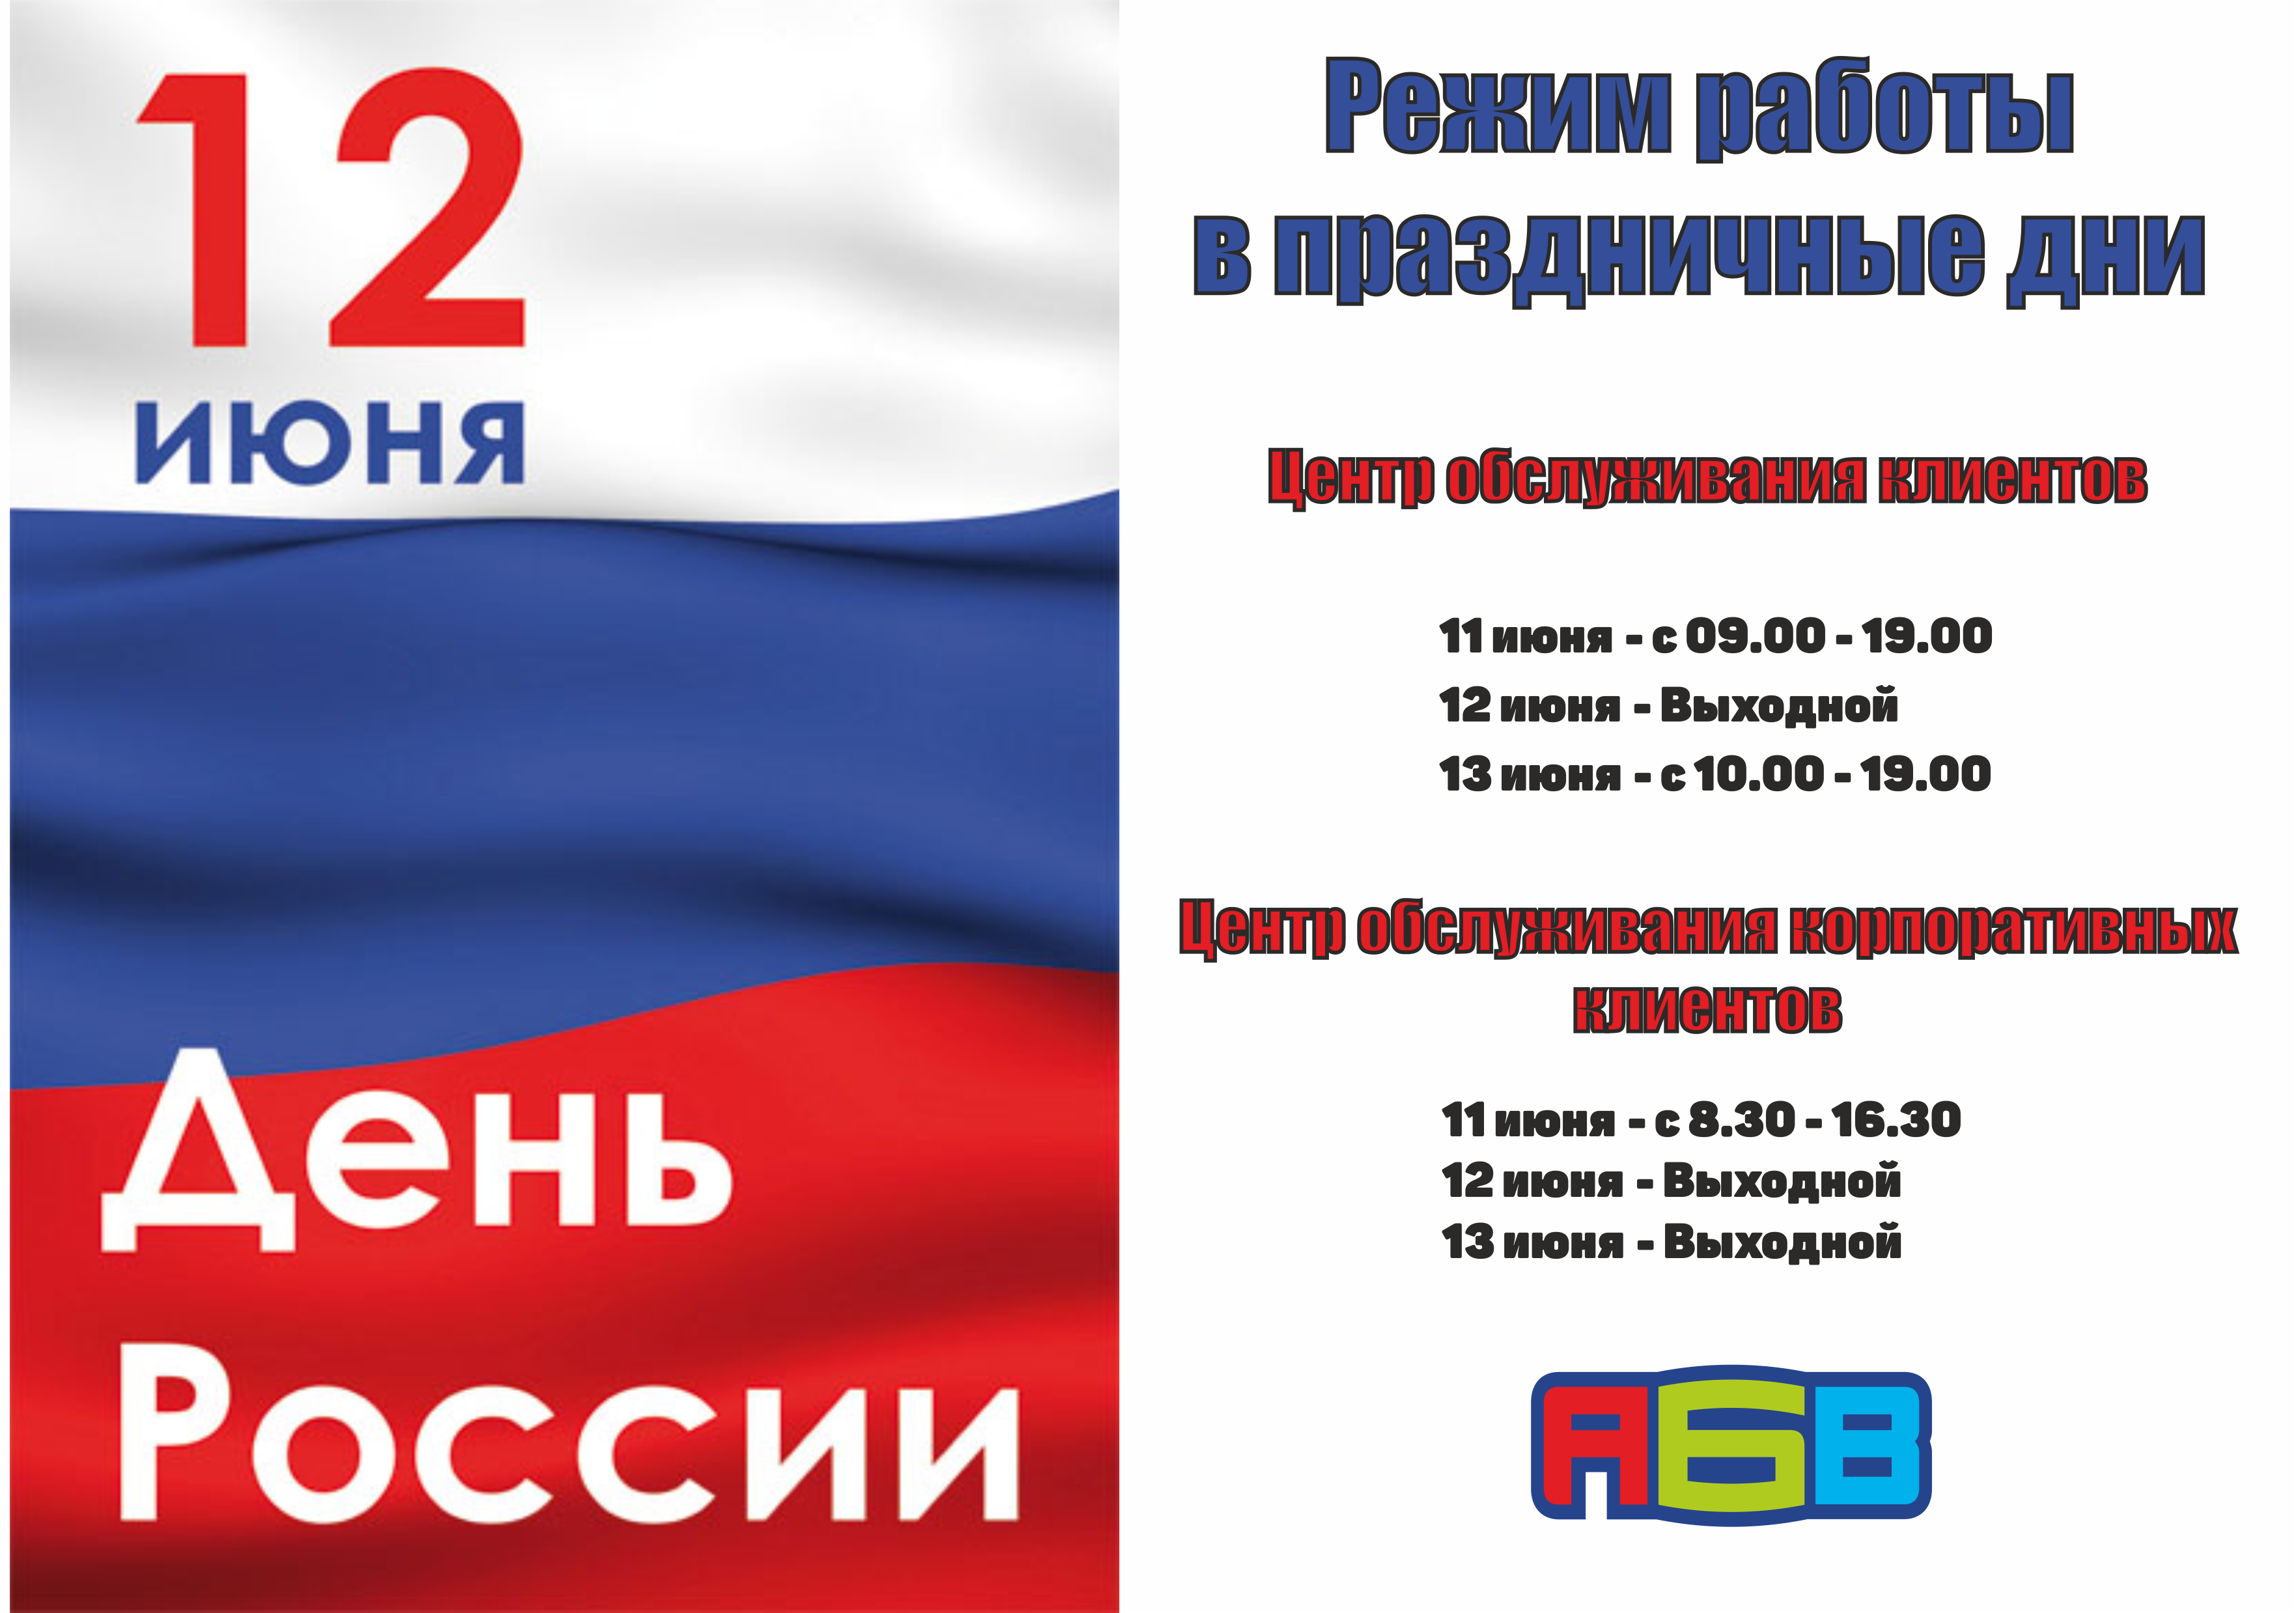 12 июня выходной день. С днём России 12 июня. День России нерабочий день. Объявление 12 июня выходной день.